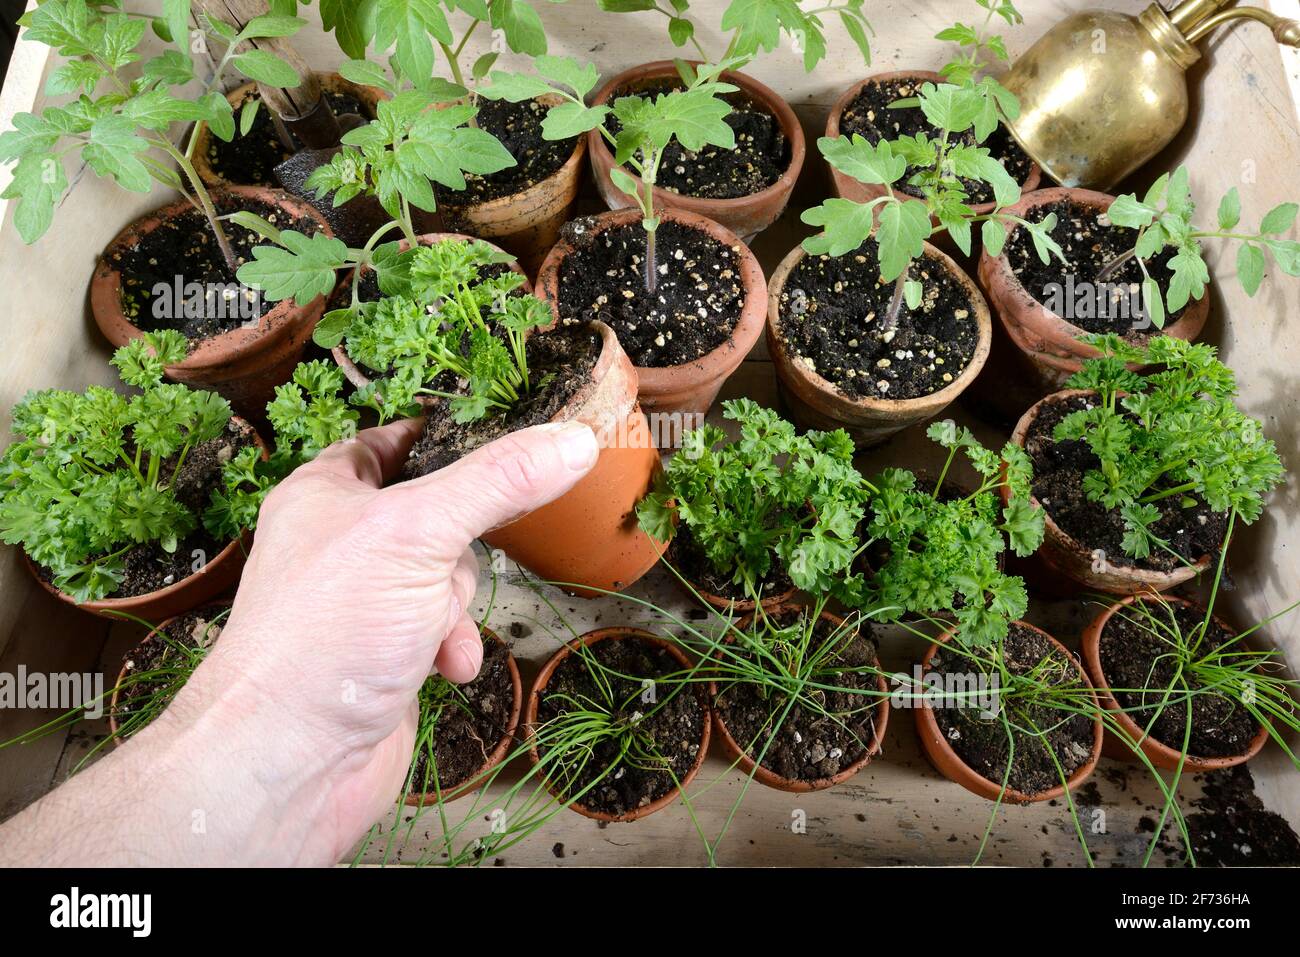 Chive (Allium schoenoprasum), parsley (Petroselinum crispum), tomatoes (Solanum lycopersicum), plant cultivation Stock Photo